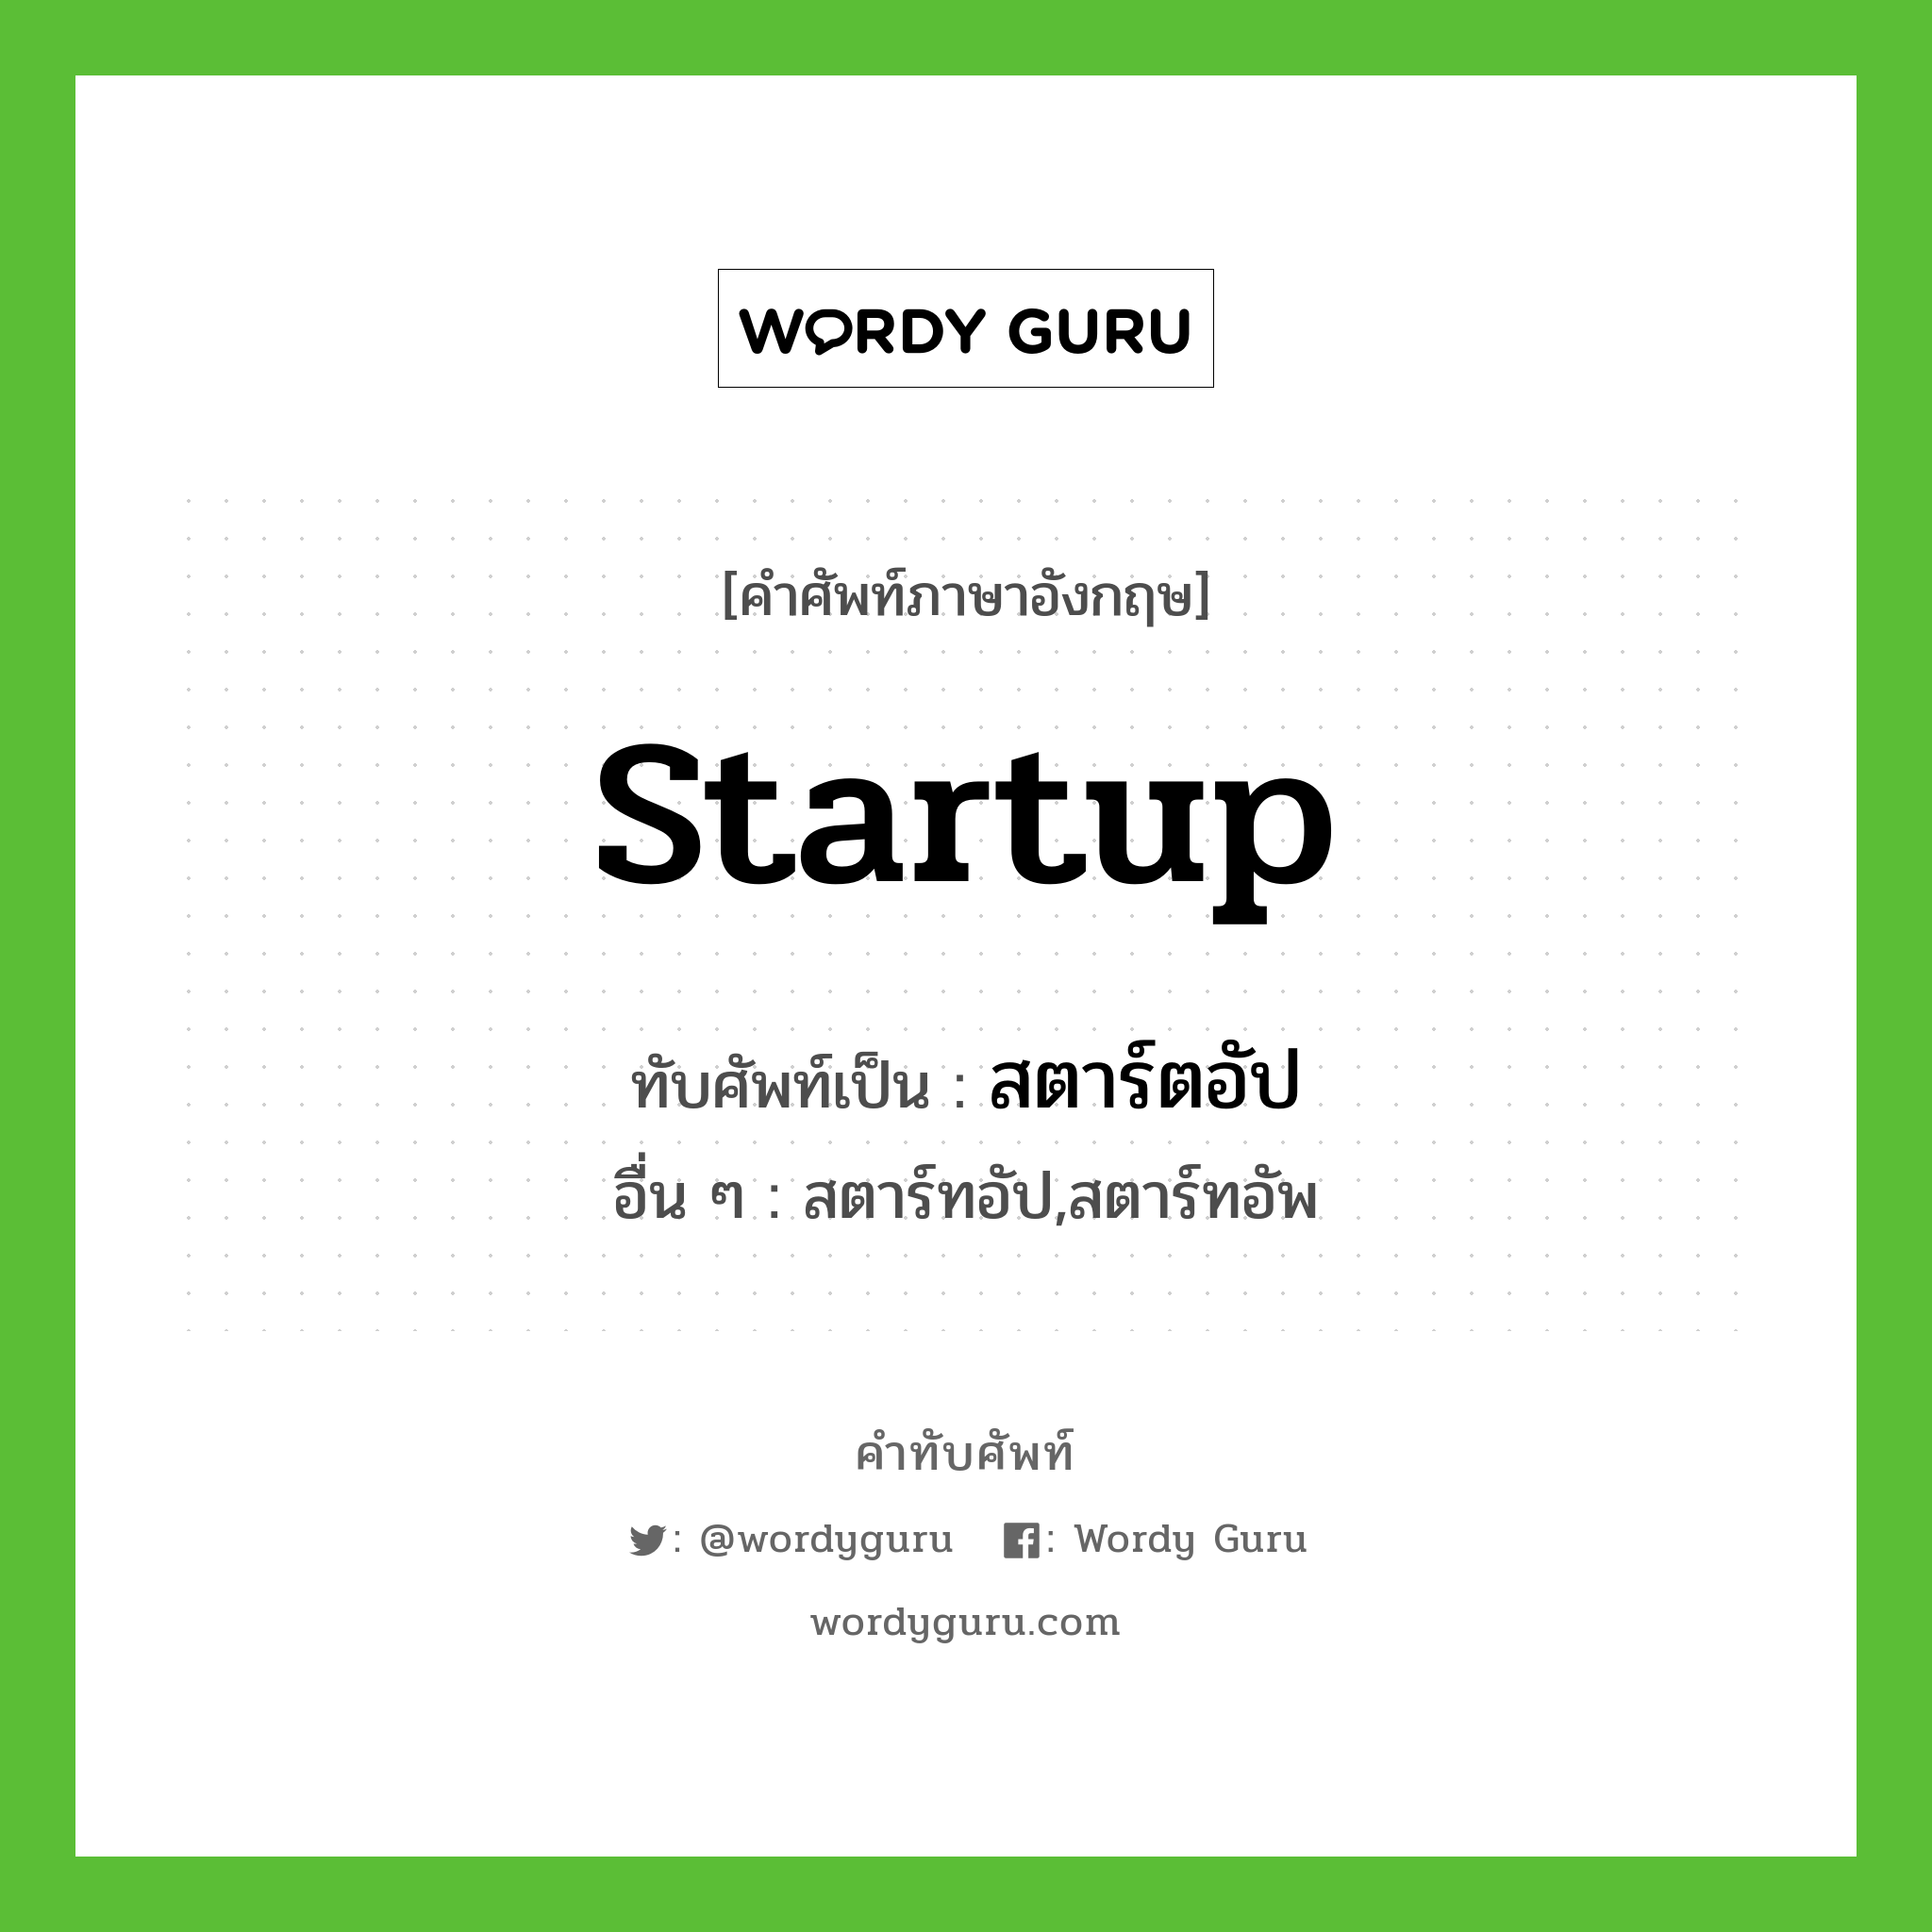 Startup เขียนเป็นคำไทยว่าอะไร?, คำศัพท์ภาษาอังกฤษ Startup ทับศัพท์เป็น สตาร์ตอัป อื่น ๆ สตาร์ทอัป,สตาร์ทอัพ